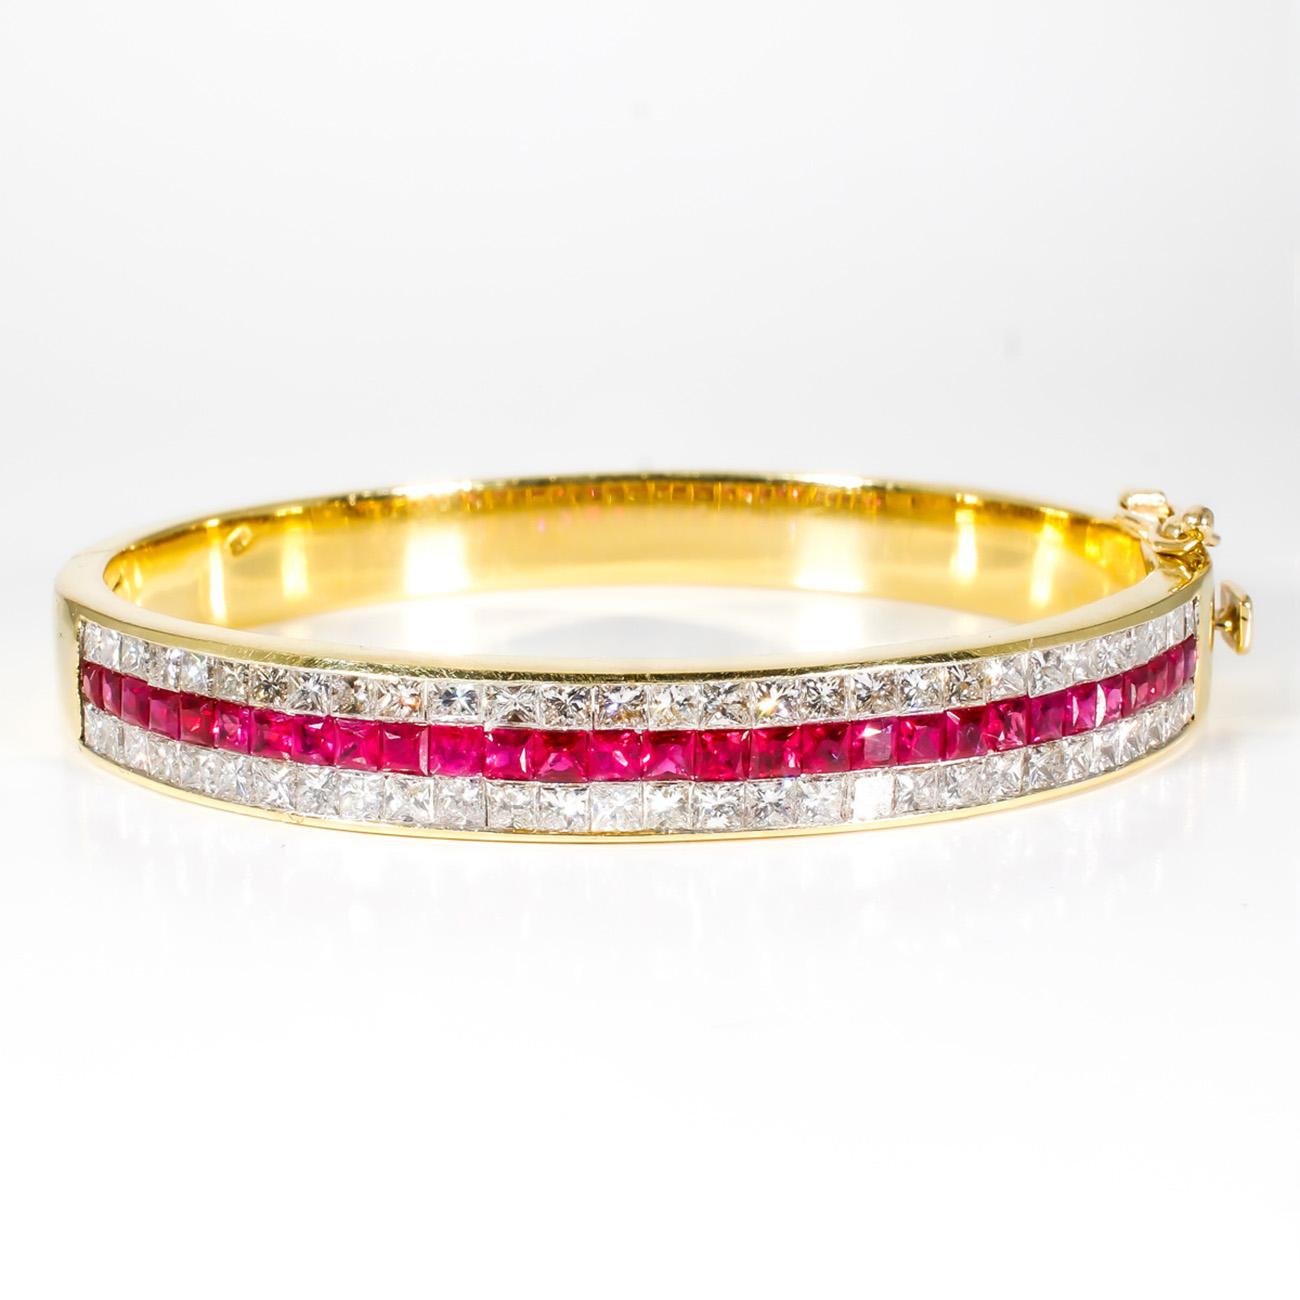 Bracelet en or jaune 18 carats avec 3 rangs invisibles sertis de diamants taille princesse et de rubis.  D4.02ct.t.w.  Rubis 2.76ct.t.w.